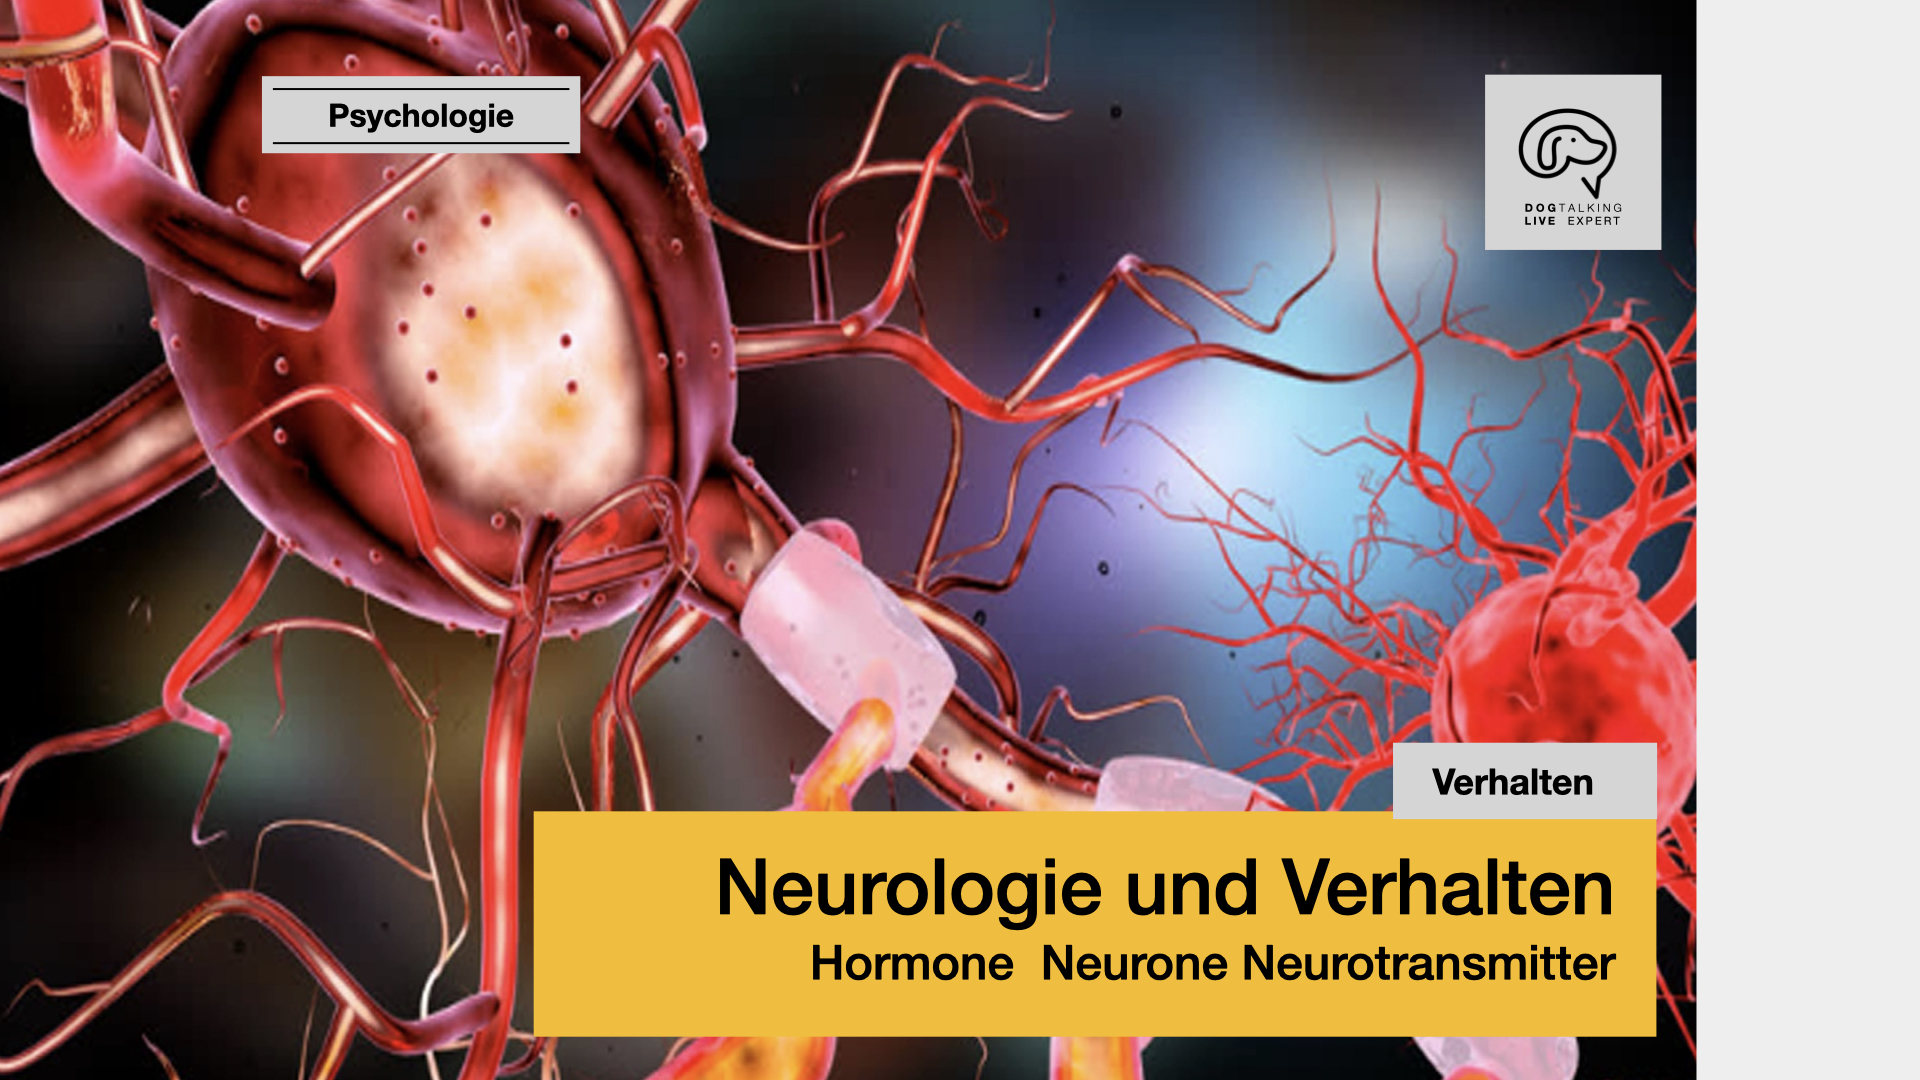 Neurologie und Verhalten - Hormone, Neurone, Neurotransmitter